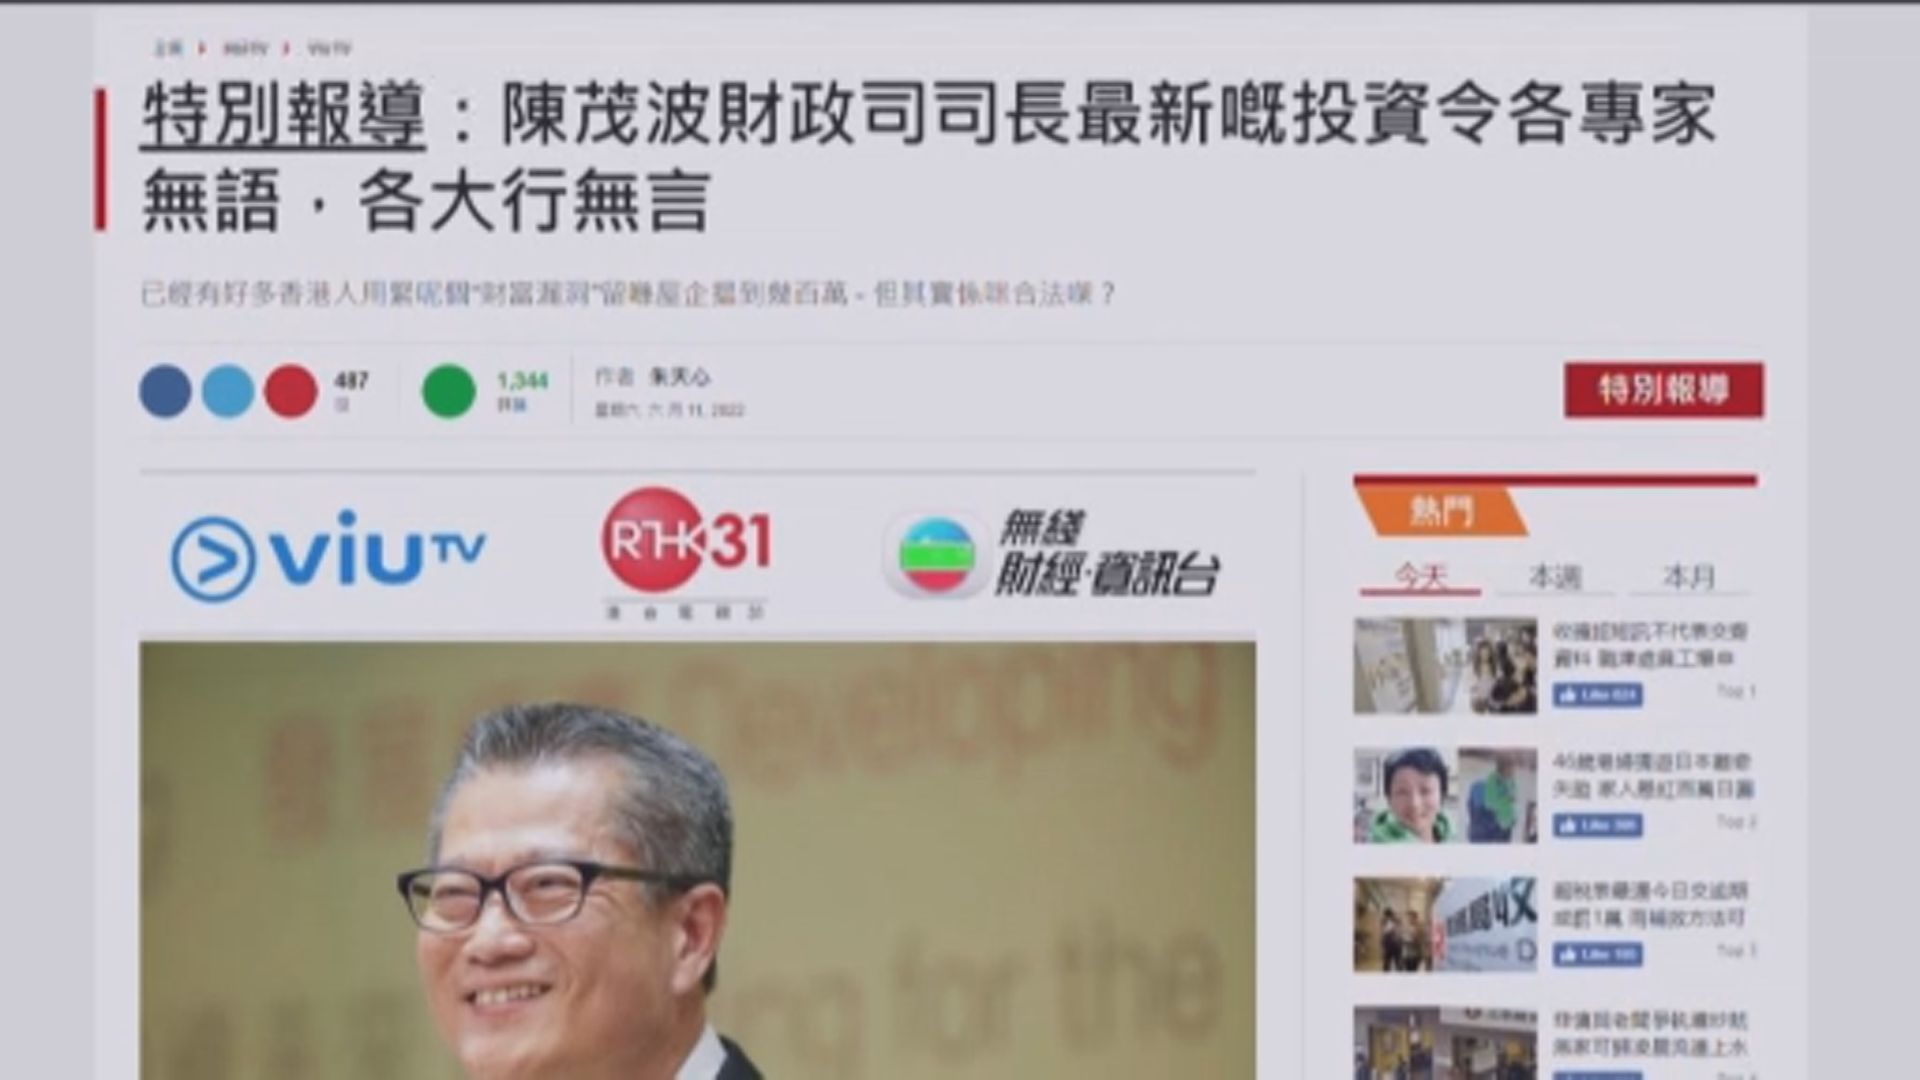 當局指網上流傳偽冒陳茂波詐騙廣告　籲市民小心提防